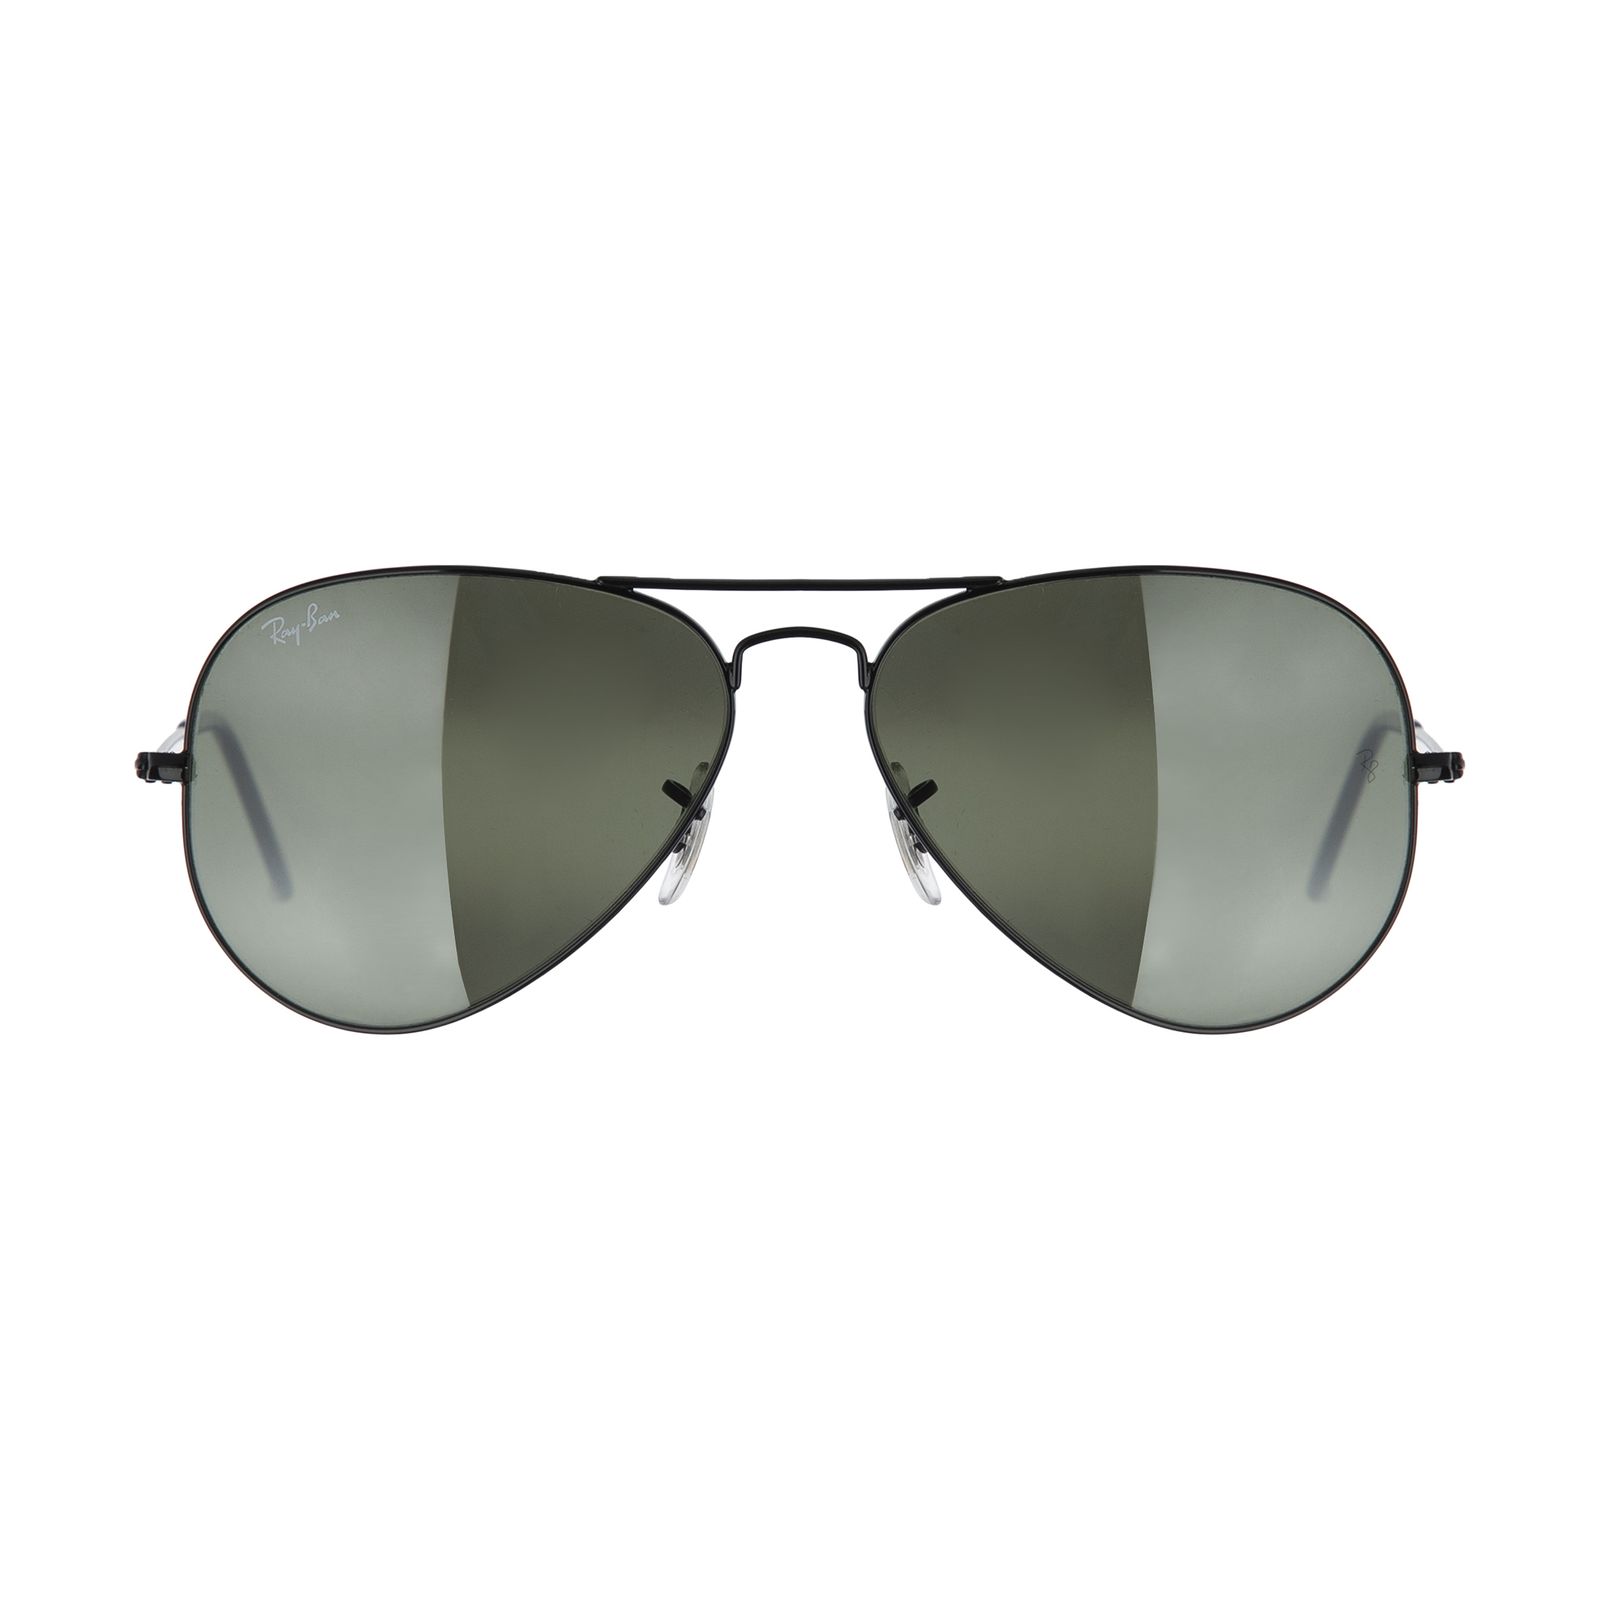 عینک آفتابی ری بن مدل 002/37-58 -  - 1